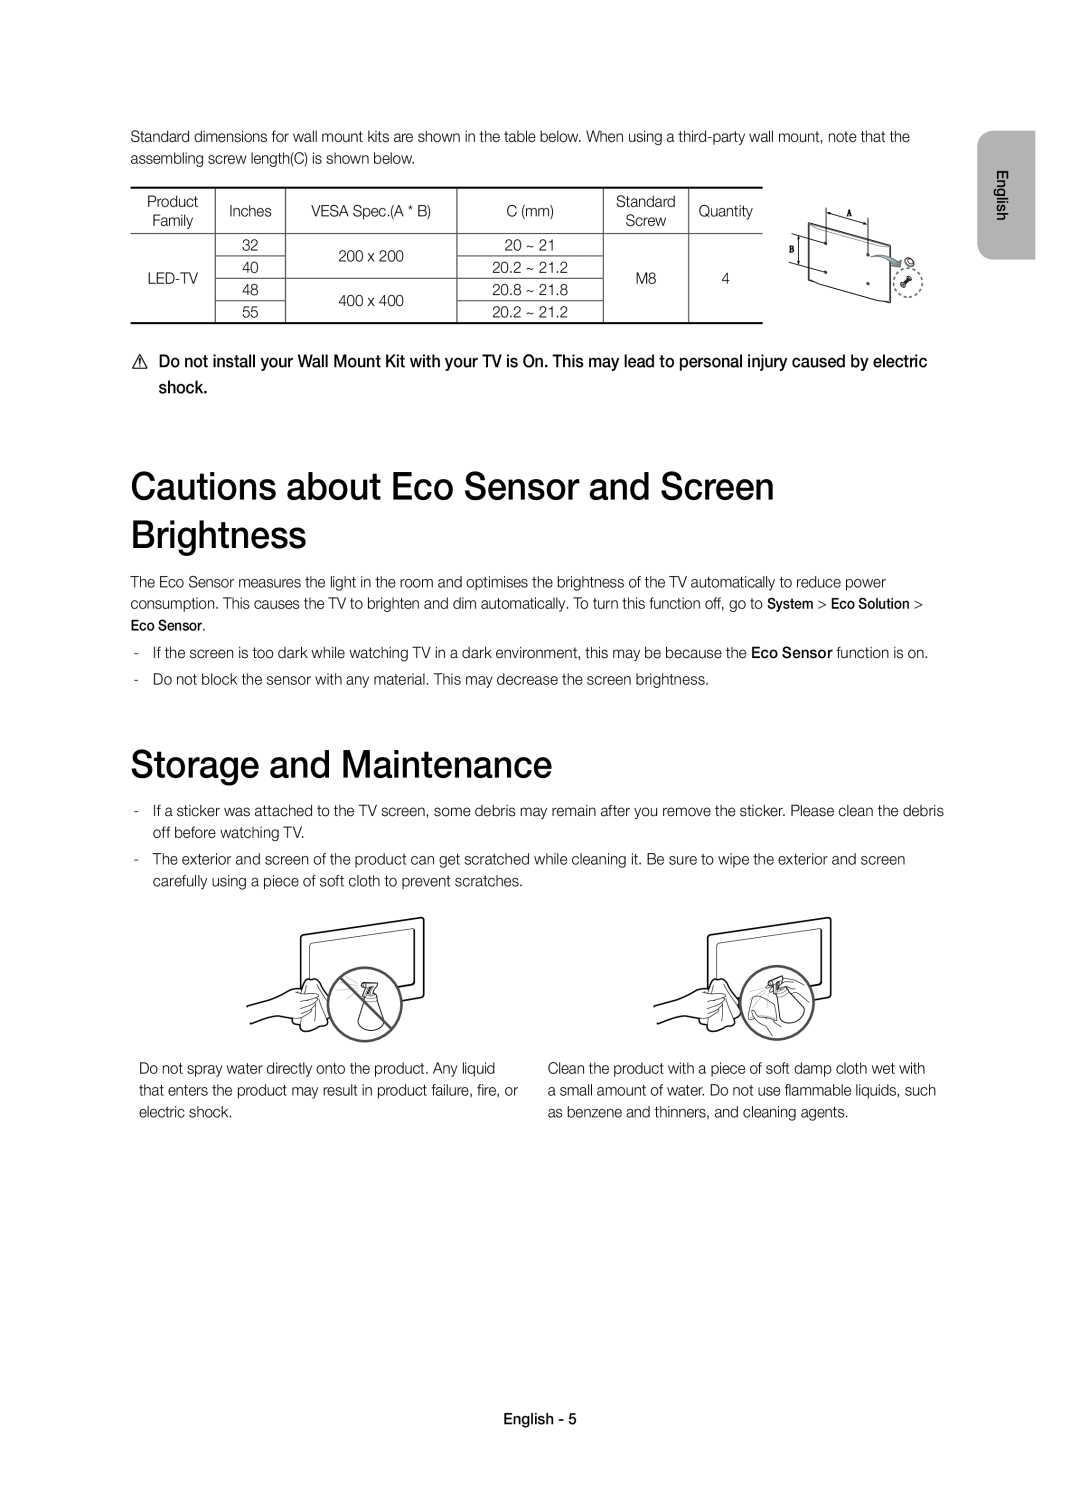 Samsung UE40H6410SSXZG, UE55H6410SSXXH Cautions about Eco Sensor and Screen Brightness, Storage and Maintenance, Screw 